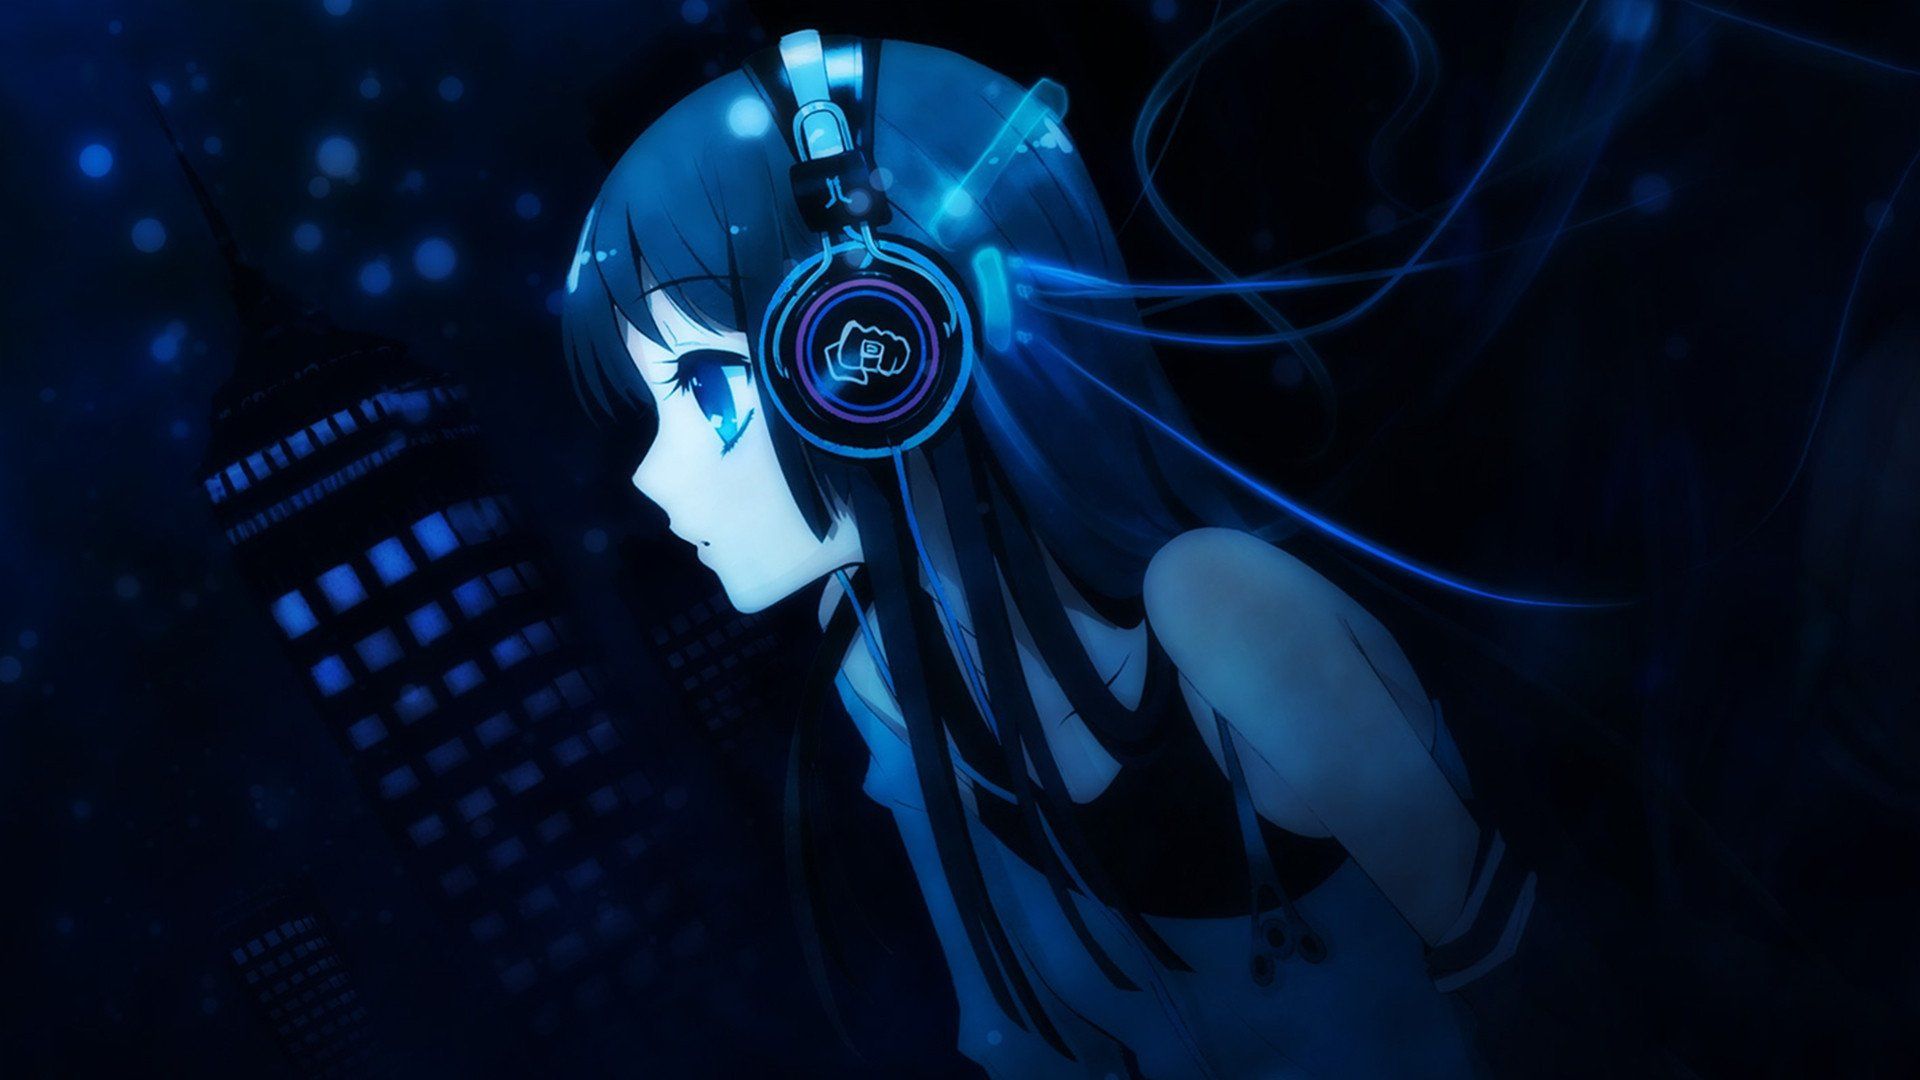 Hero Wallpaper headphones Wallpaper #Osx #Wallpaper #Anime #Anime #Headphones #Headphone